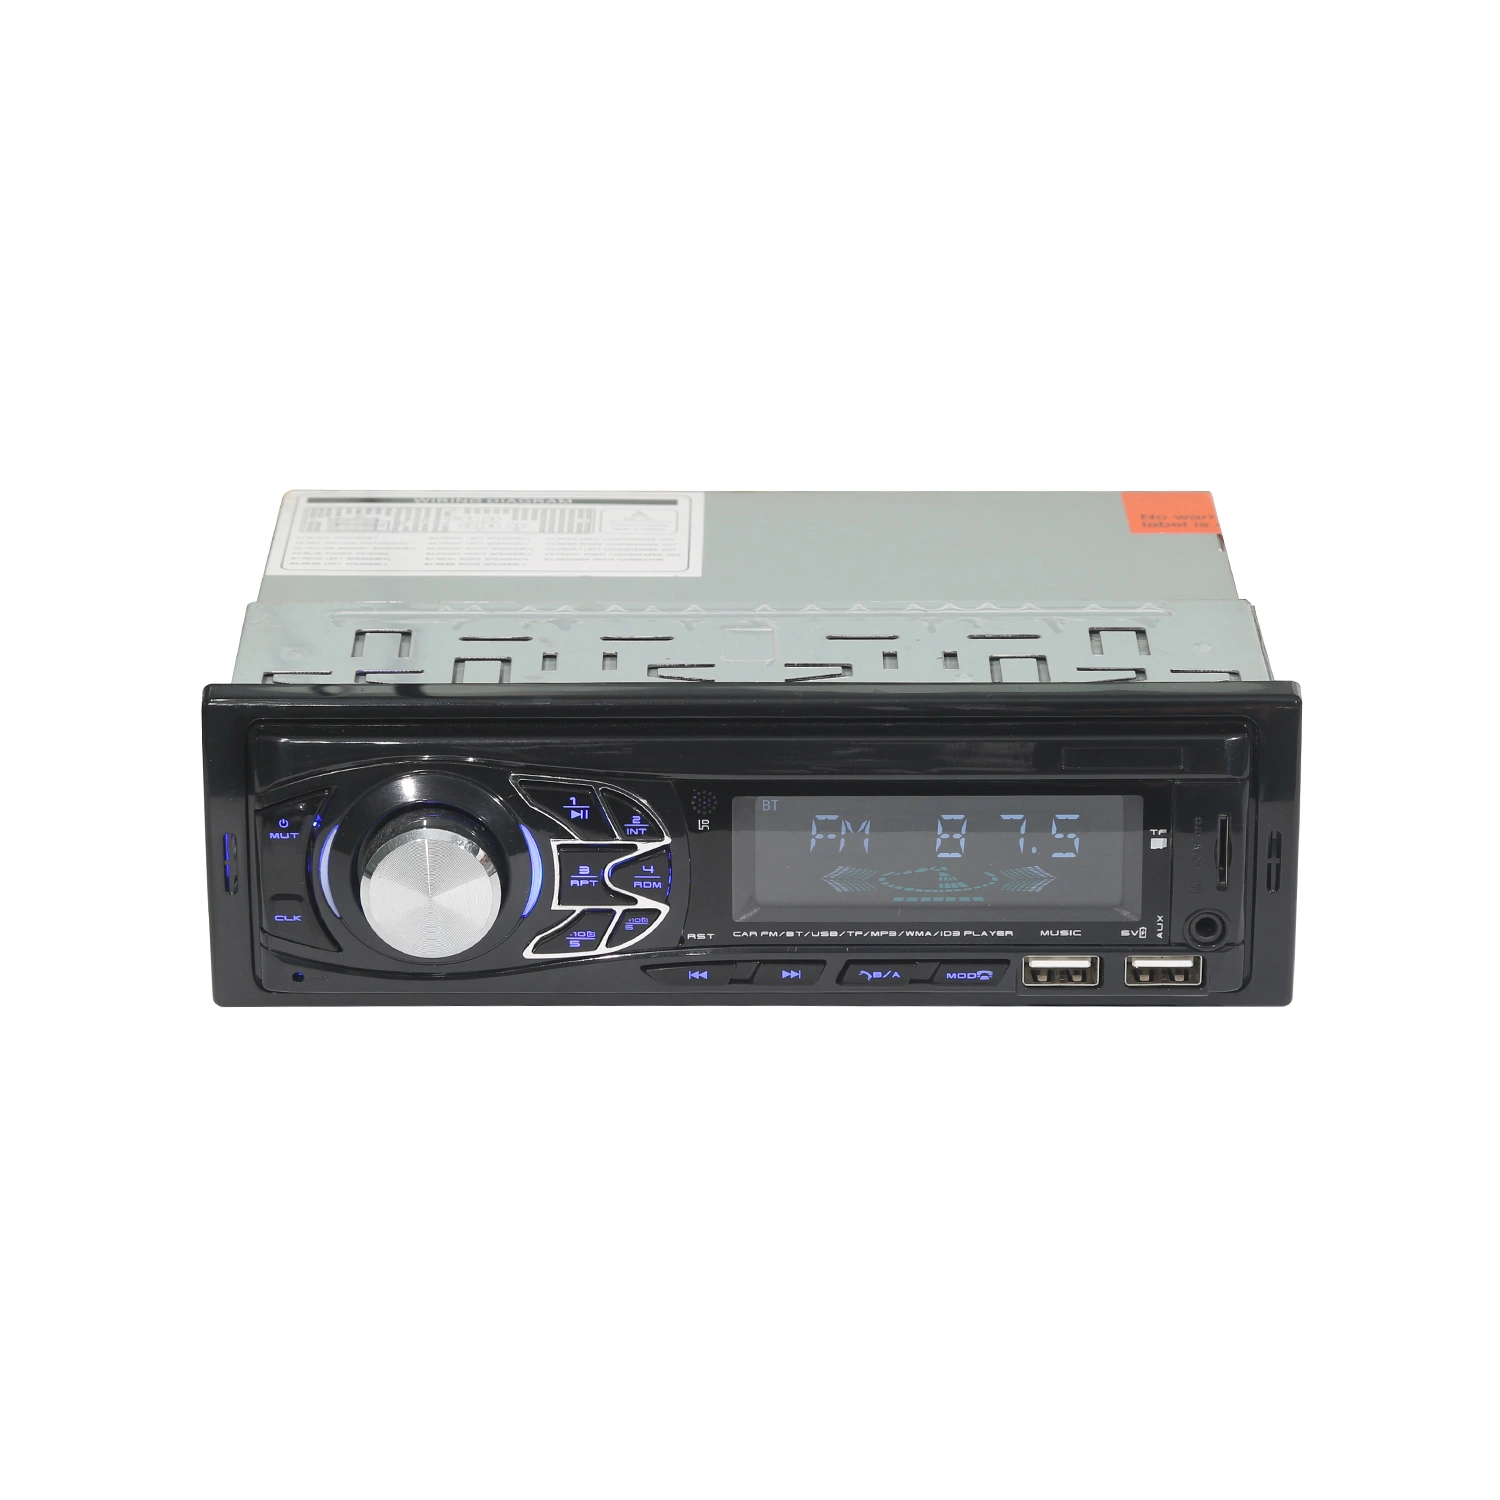 UKW/RDS/DAB+ Radio für das Auto mit MP3 Player